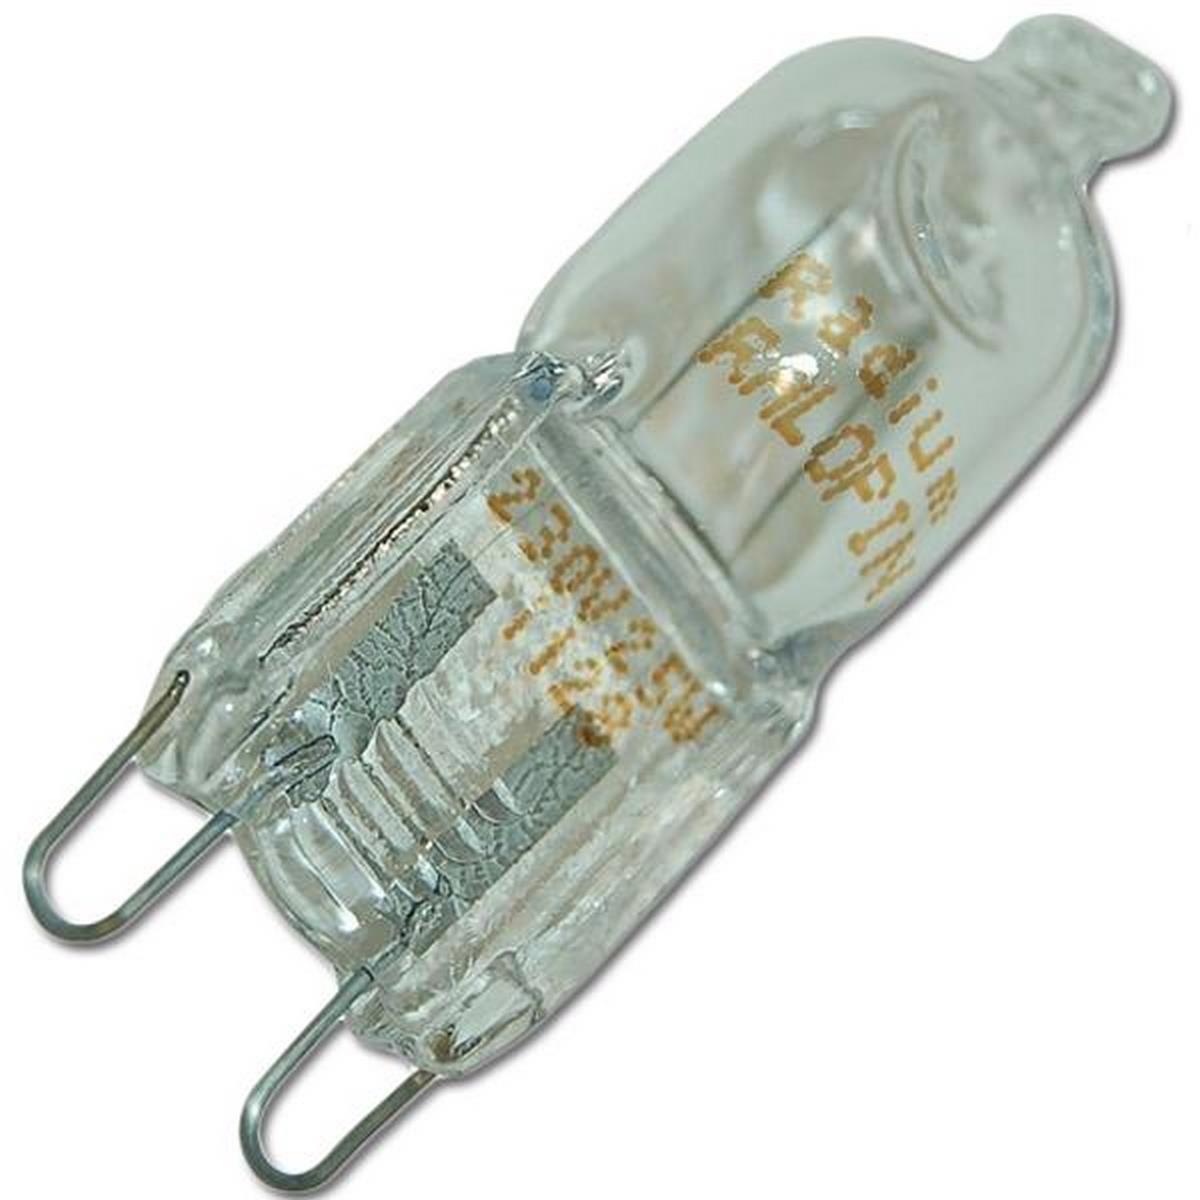 Ampoules halogènes à LED G9, 220V, 20W, 25W, 40W, 60W, cuillère à soupe,  perles insérées, lampe